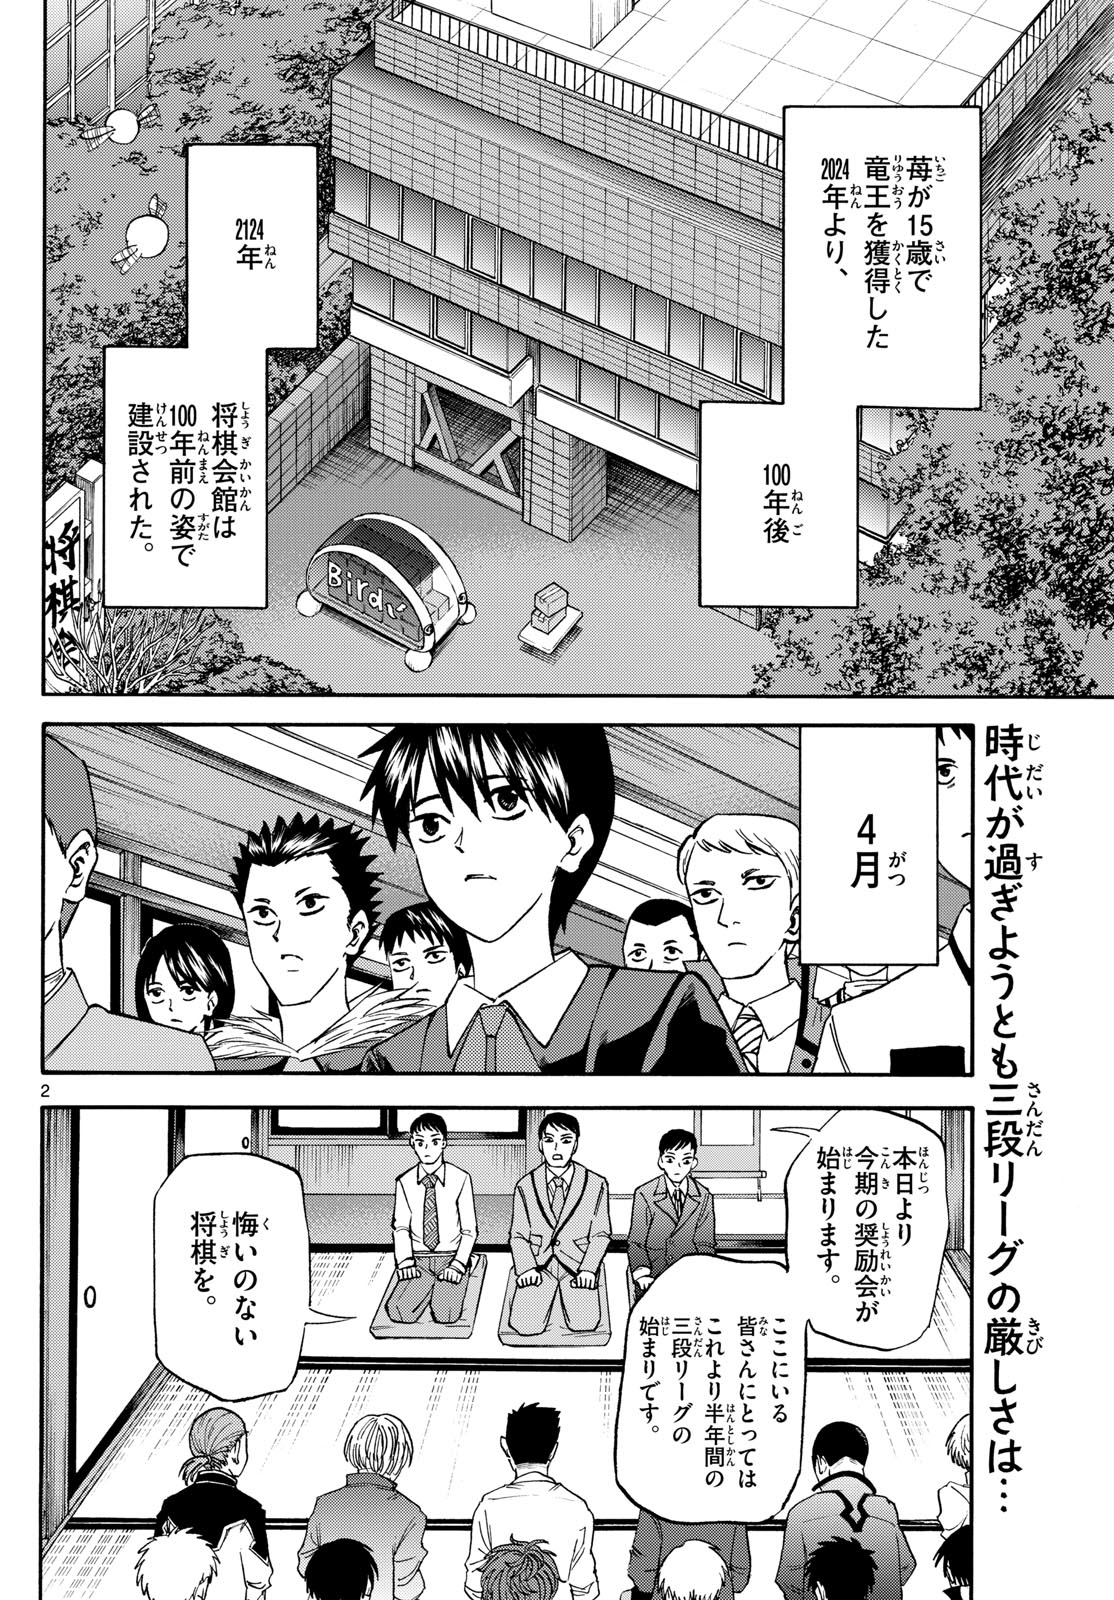 Tatsu to Ichigo - Chapter 185 - Page 2